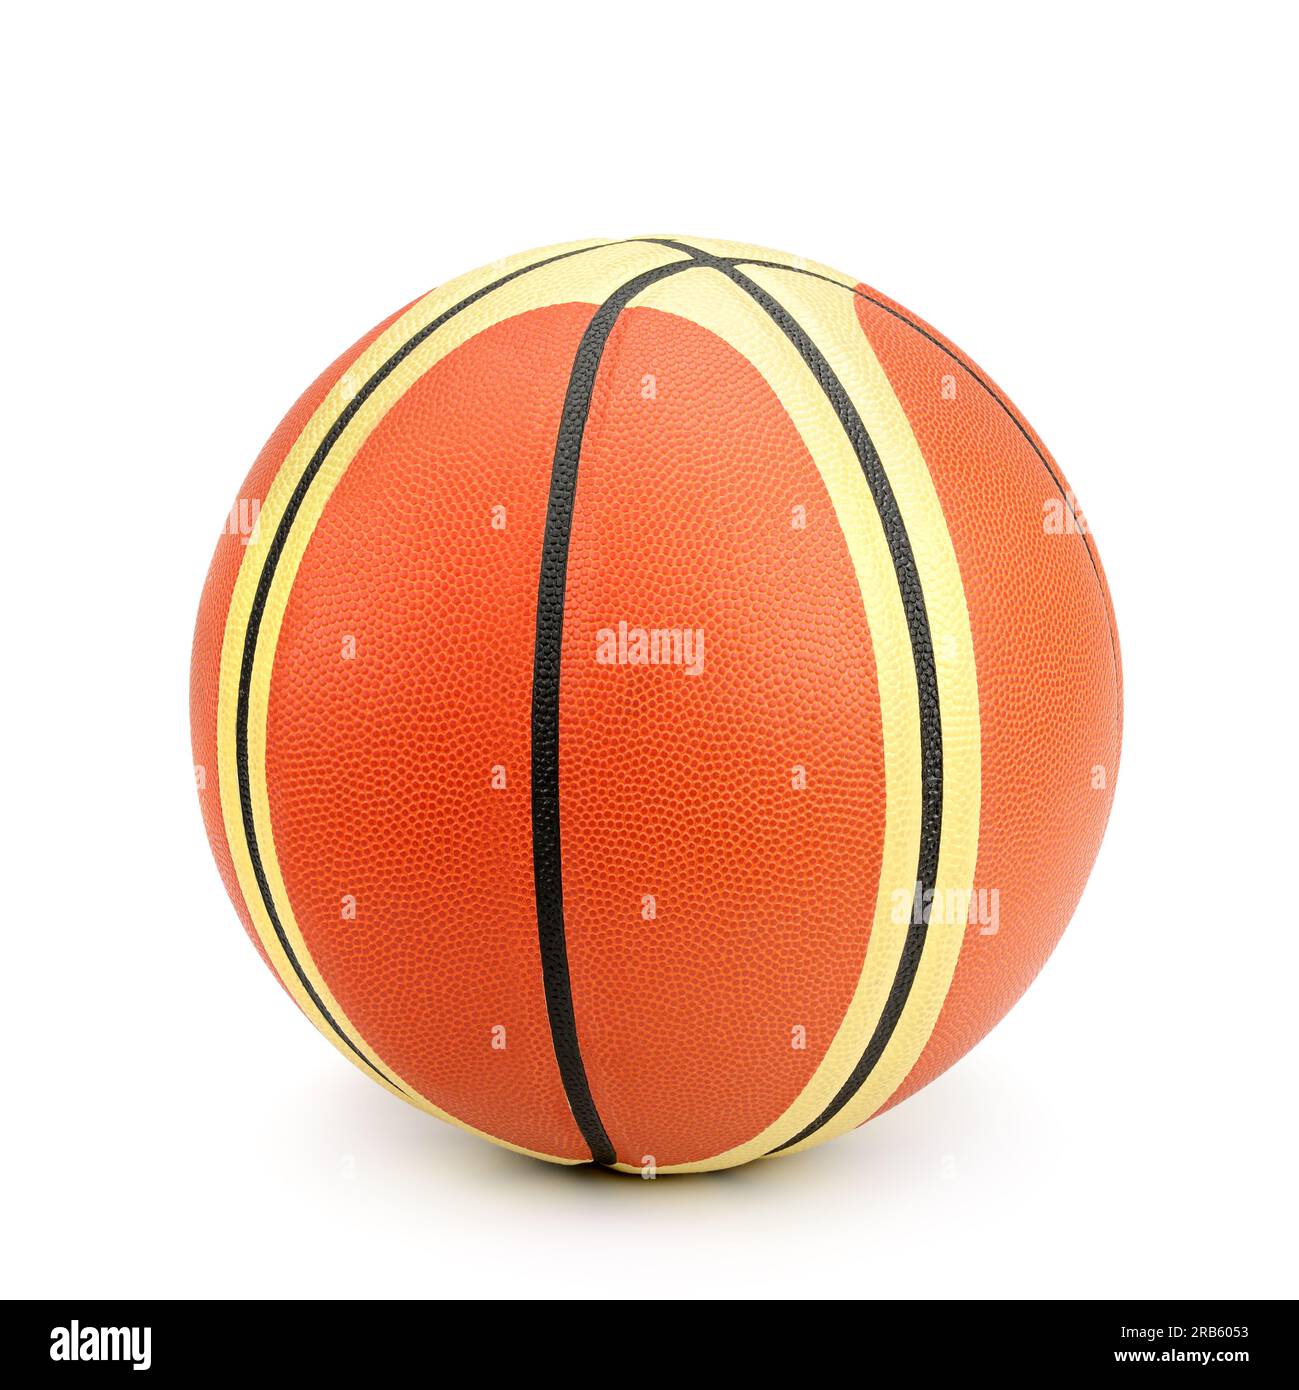 basketball isolated on white background Stock Photo